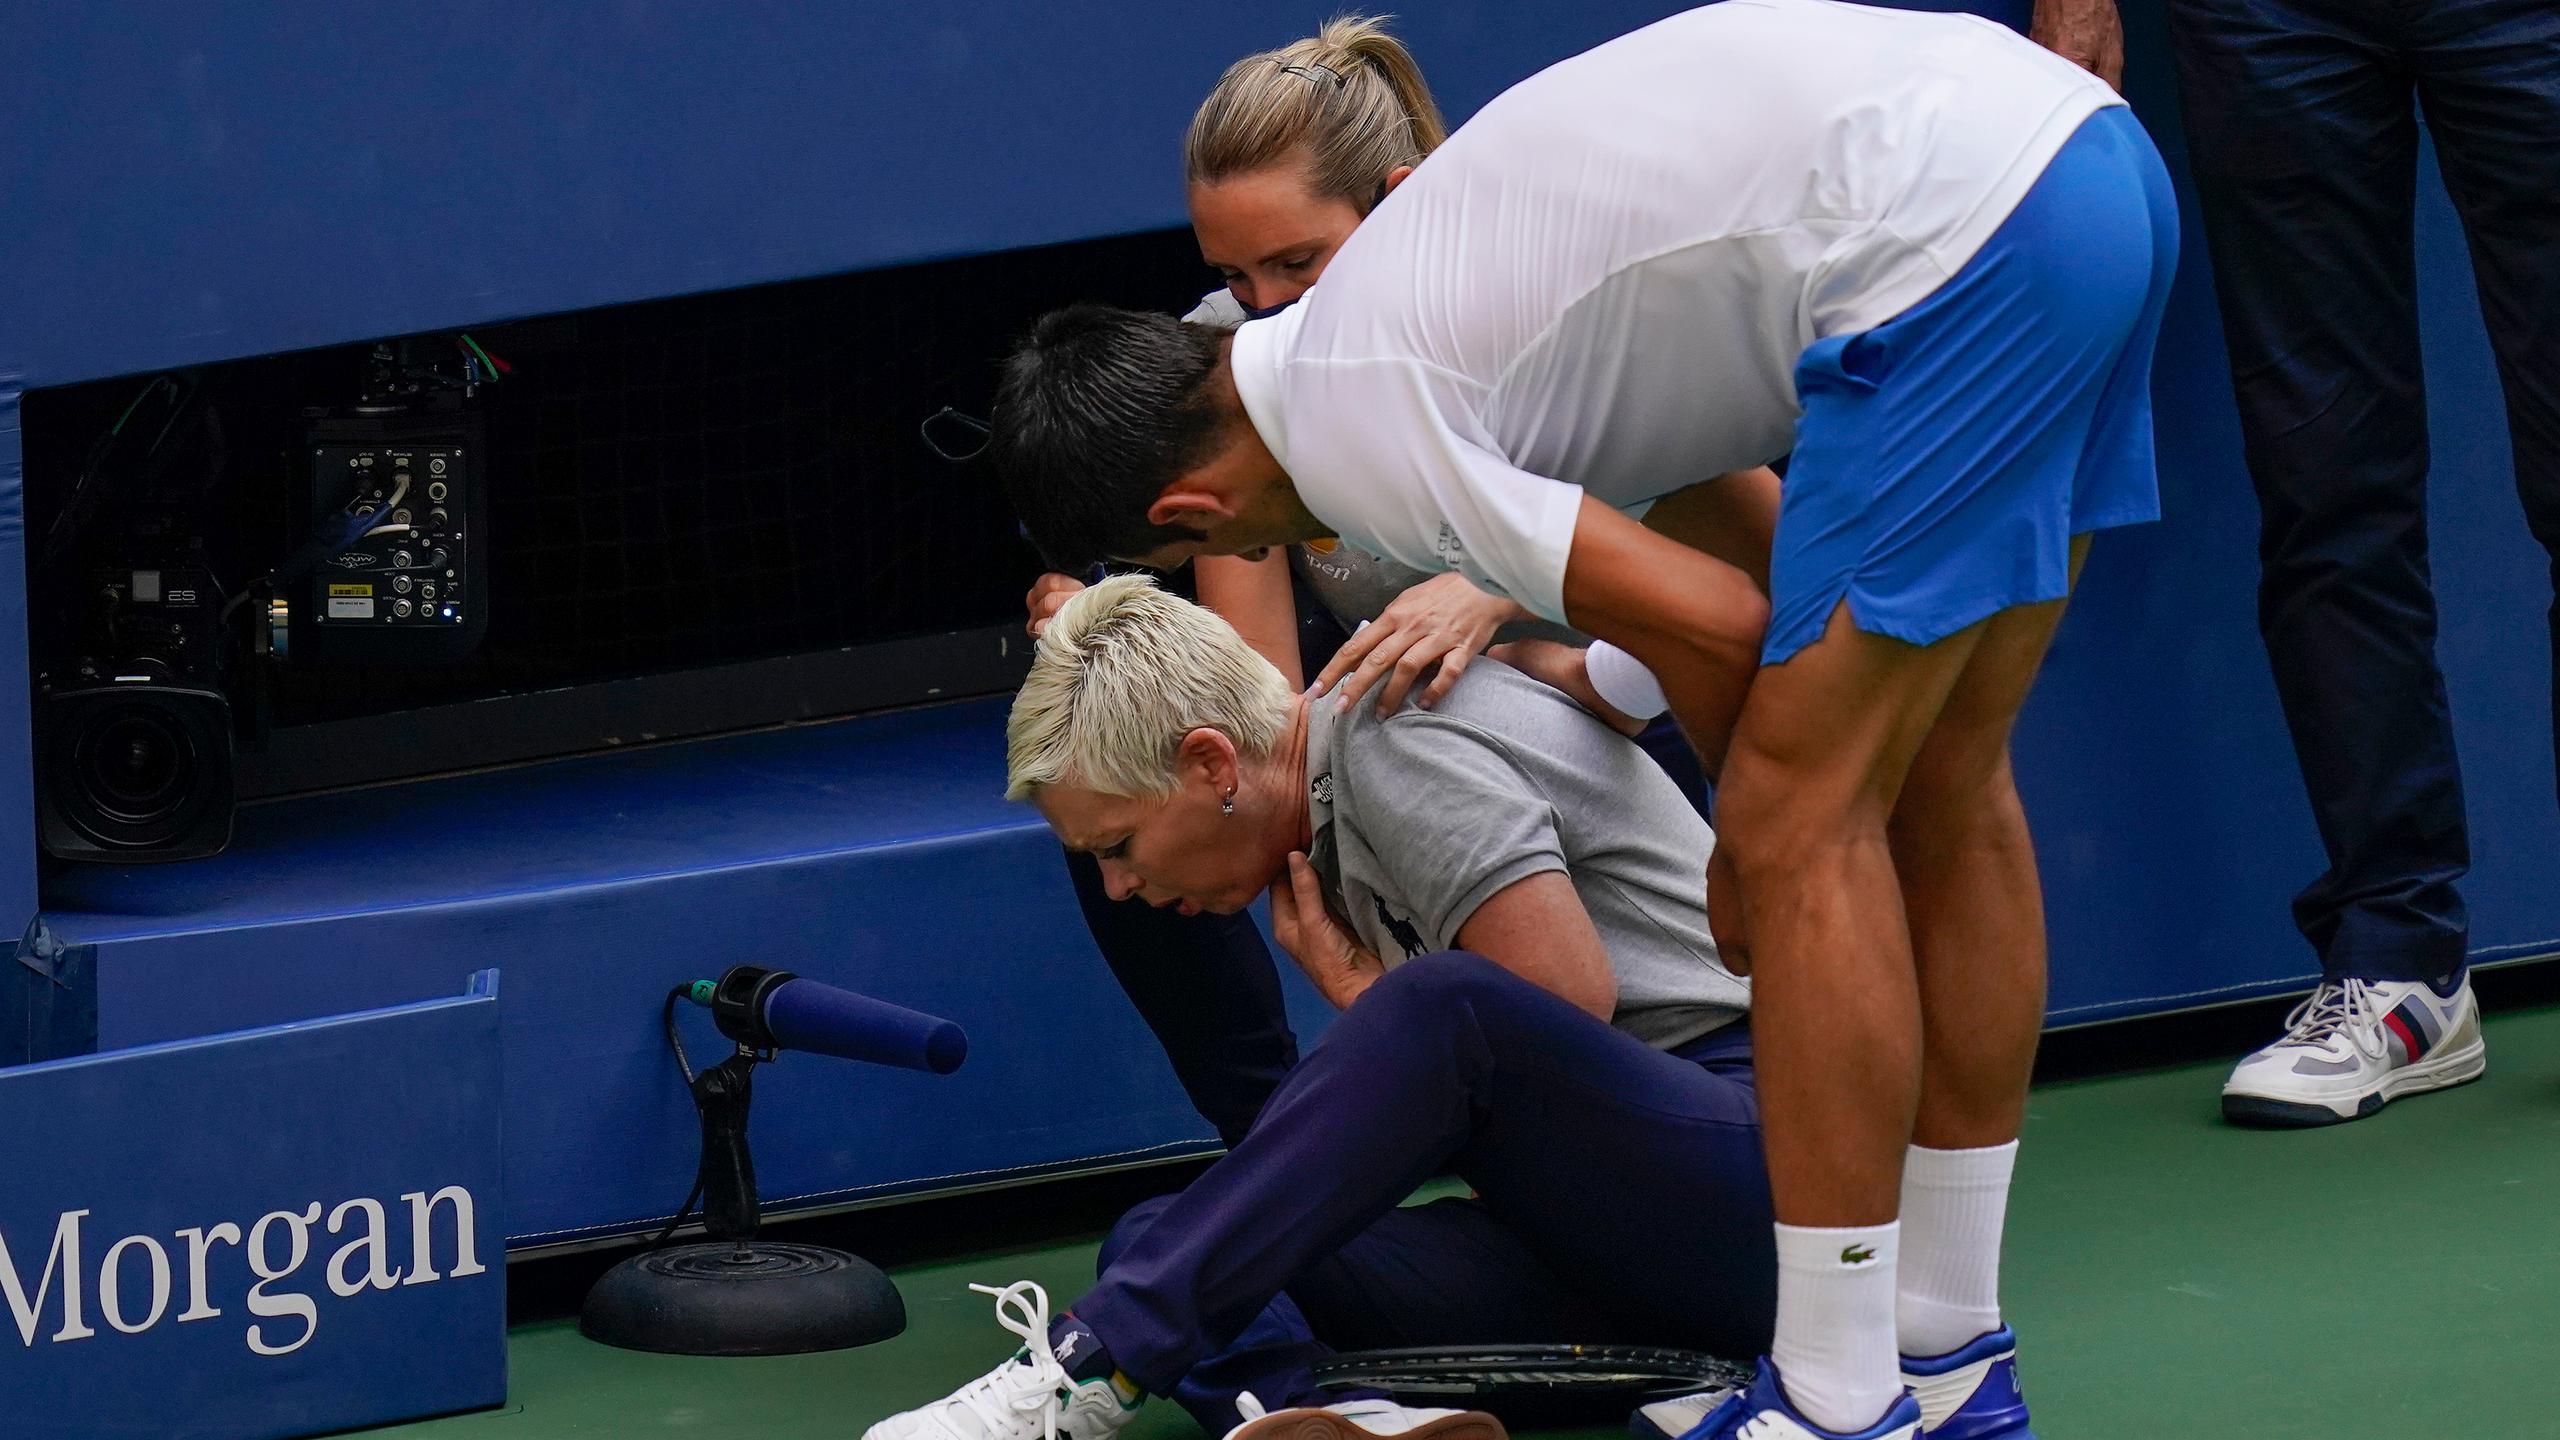 Después del undécimo juego del primer set del enfrentamiento de octavos de final, Djokovic golpeó involuntariamente a la jueza tras perder un punto que suponía el ‘break’ del tenista español.